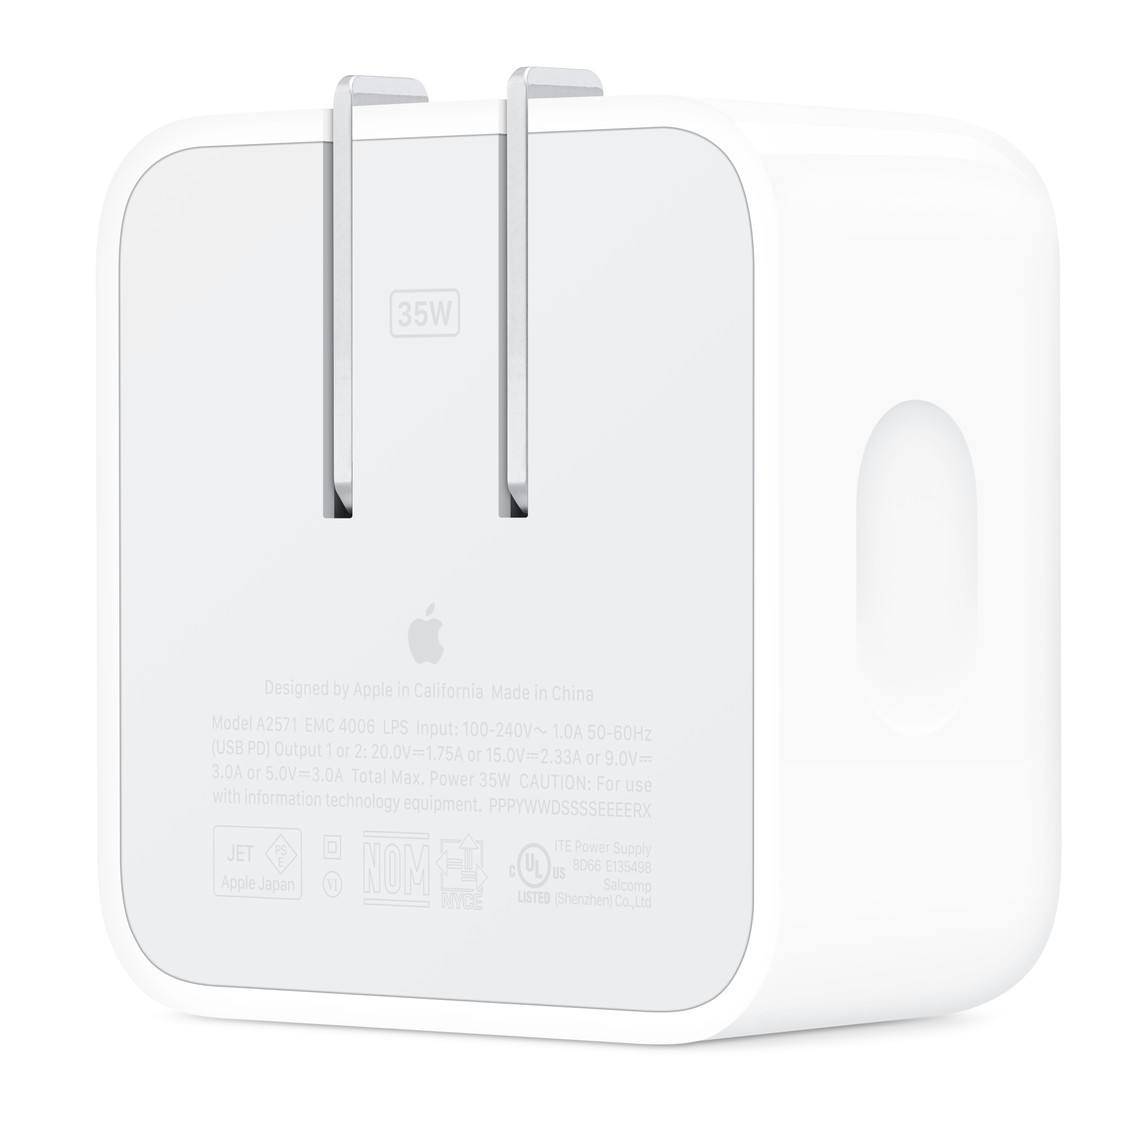 У Apple в продаже уже имеются аж две версии адаптеров на 35W, причем даже с двумя портами, а один из них – компактный, как на фото, только для Американской вилки